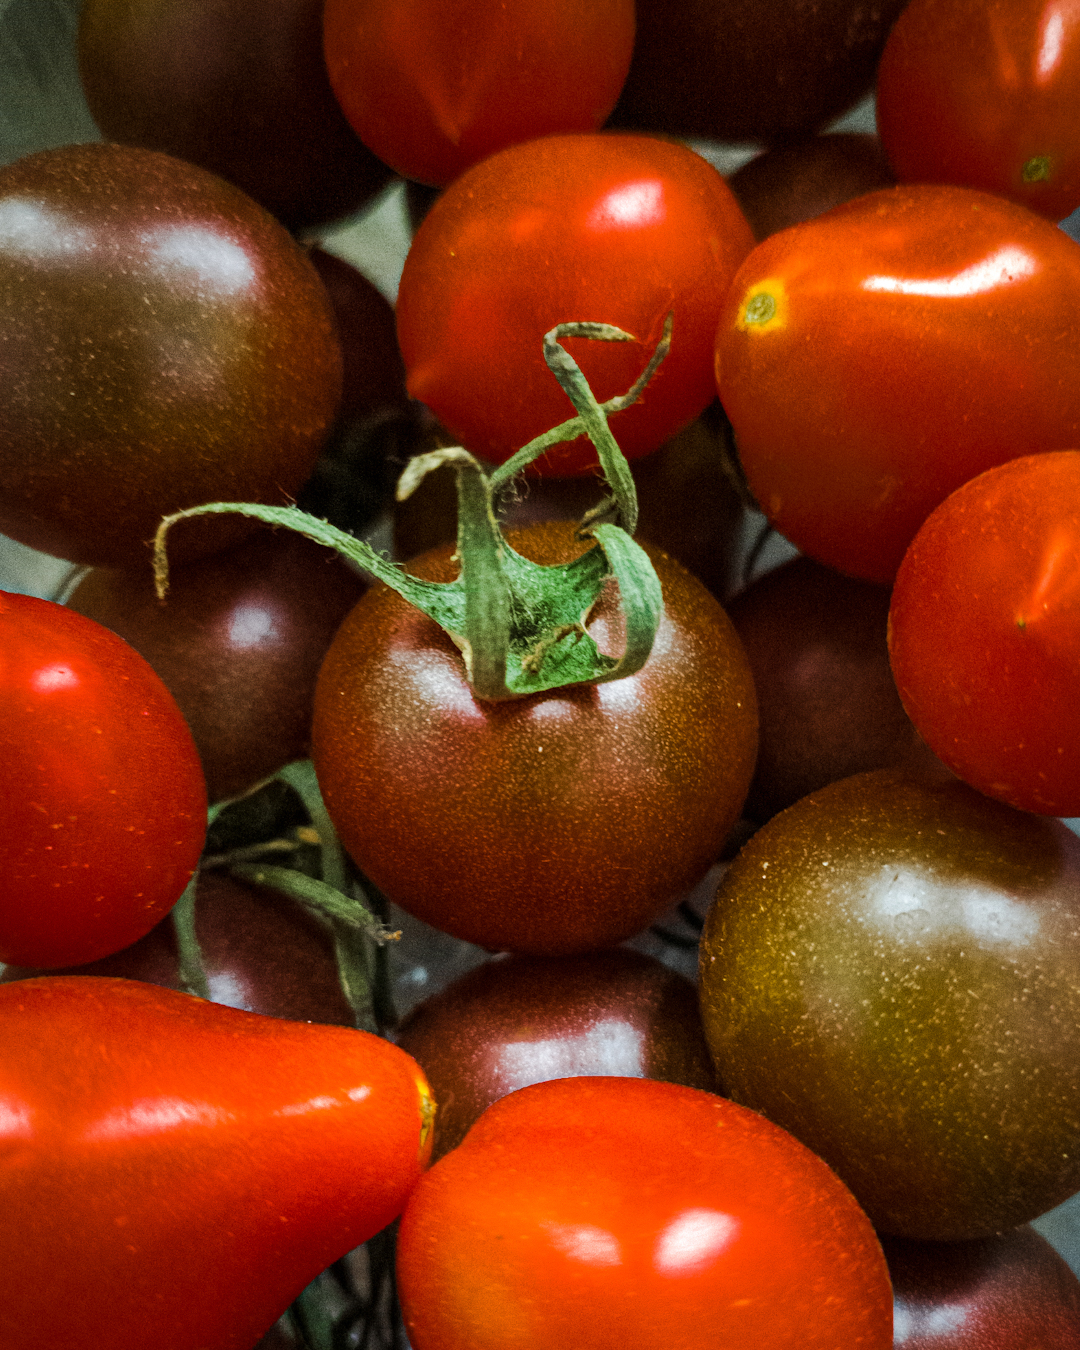 nadążamy za naturą fotografując pomidory koktajlowe w różnych odcieniach